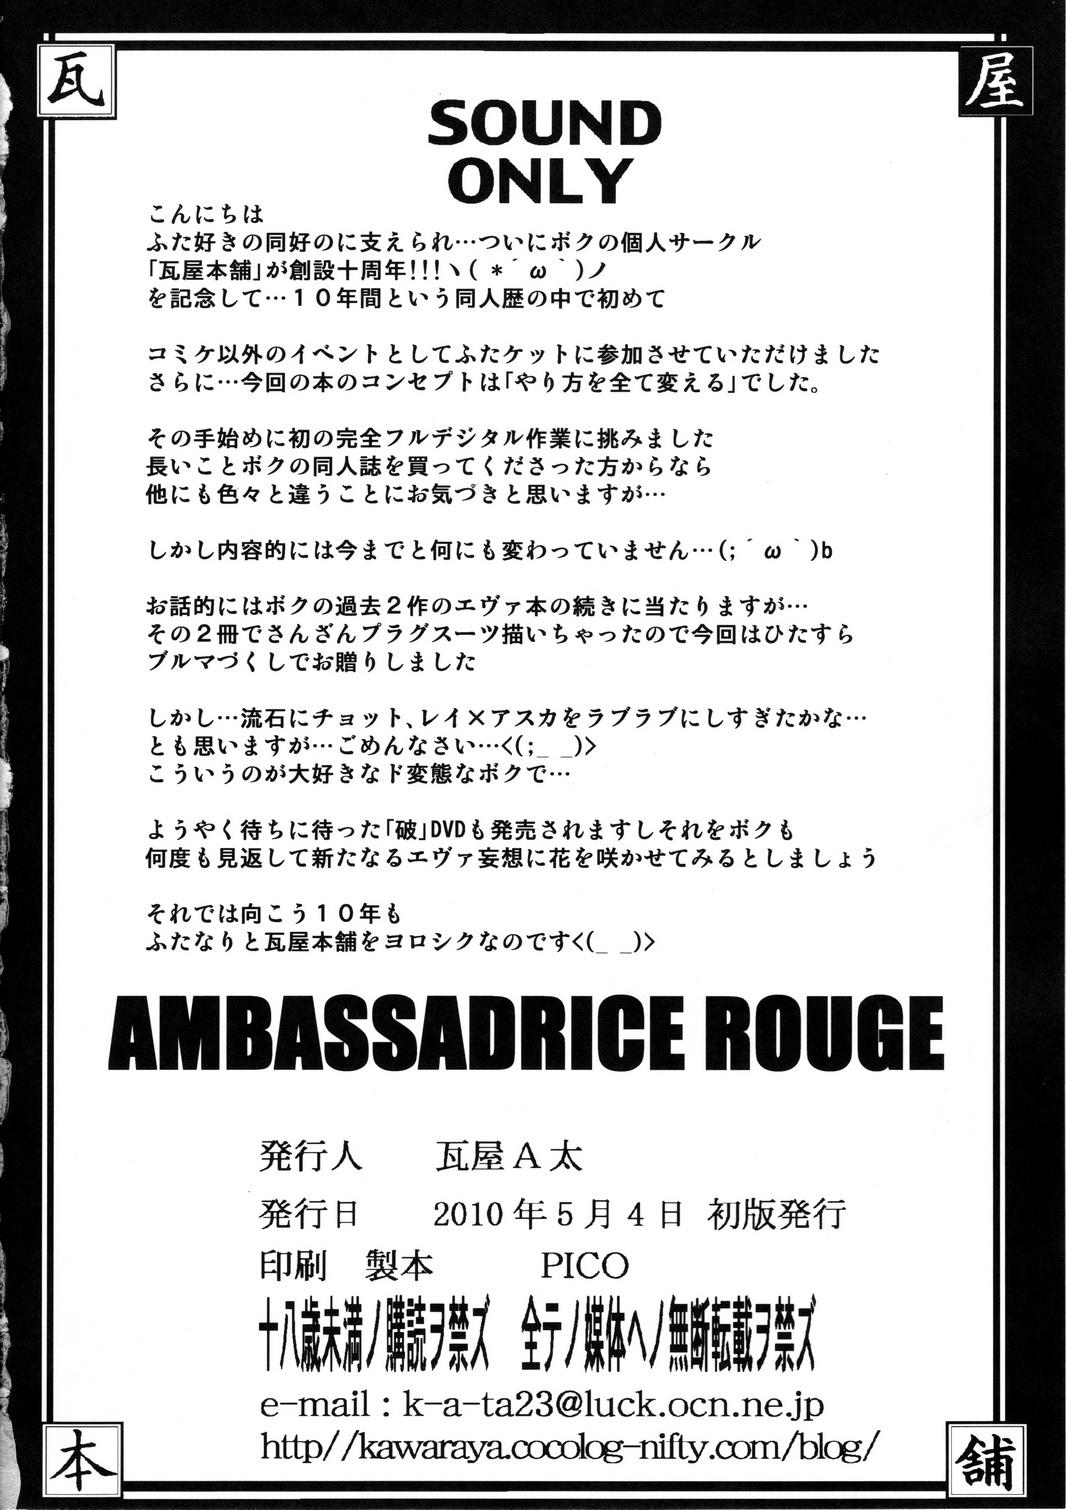 Ambassadrice Rouge 30